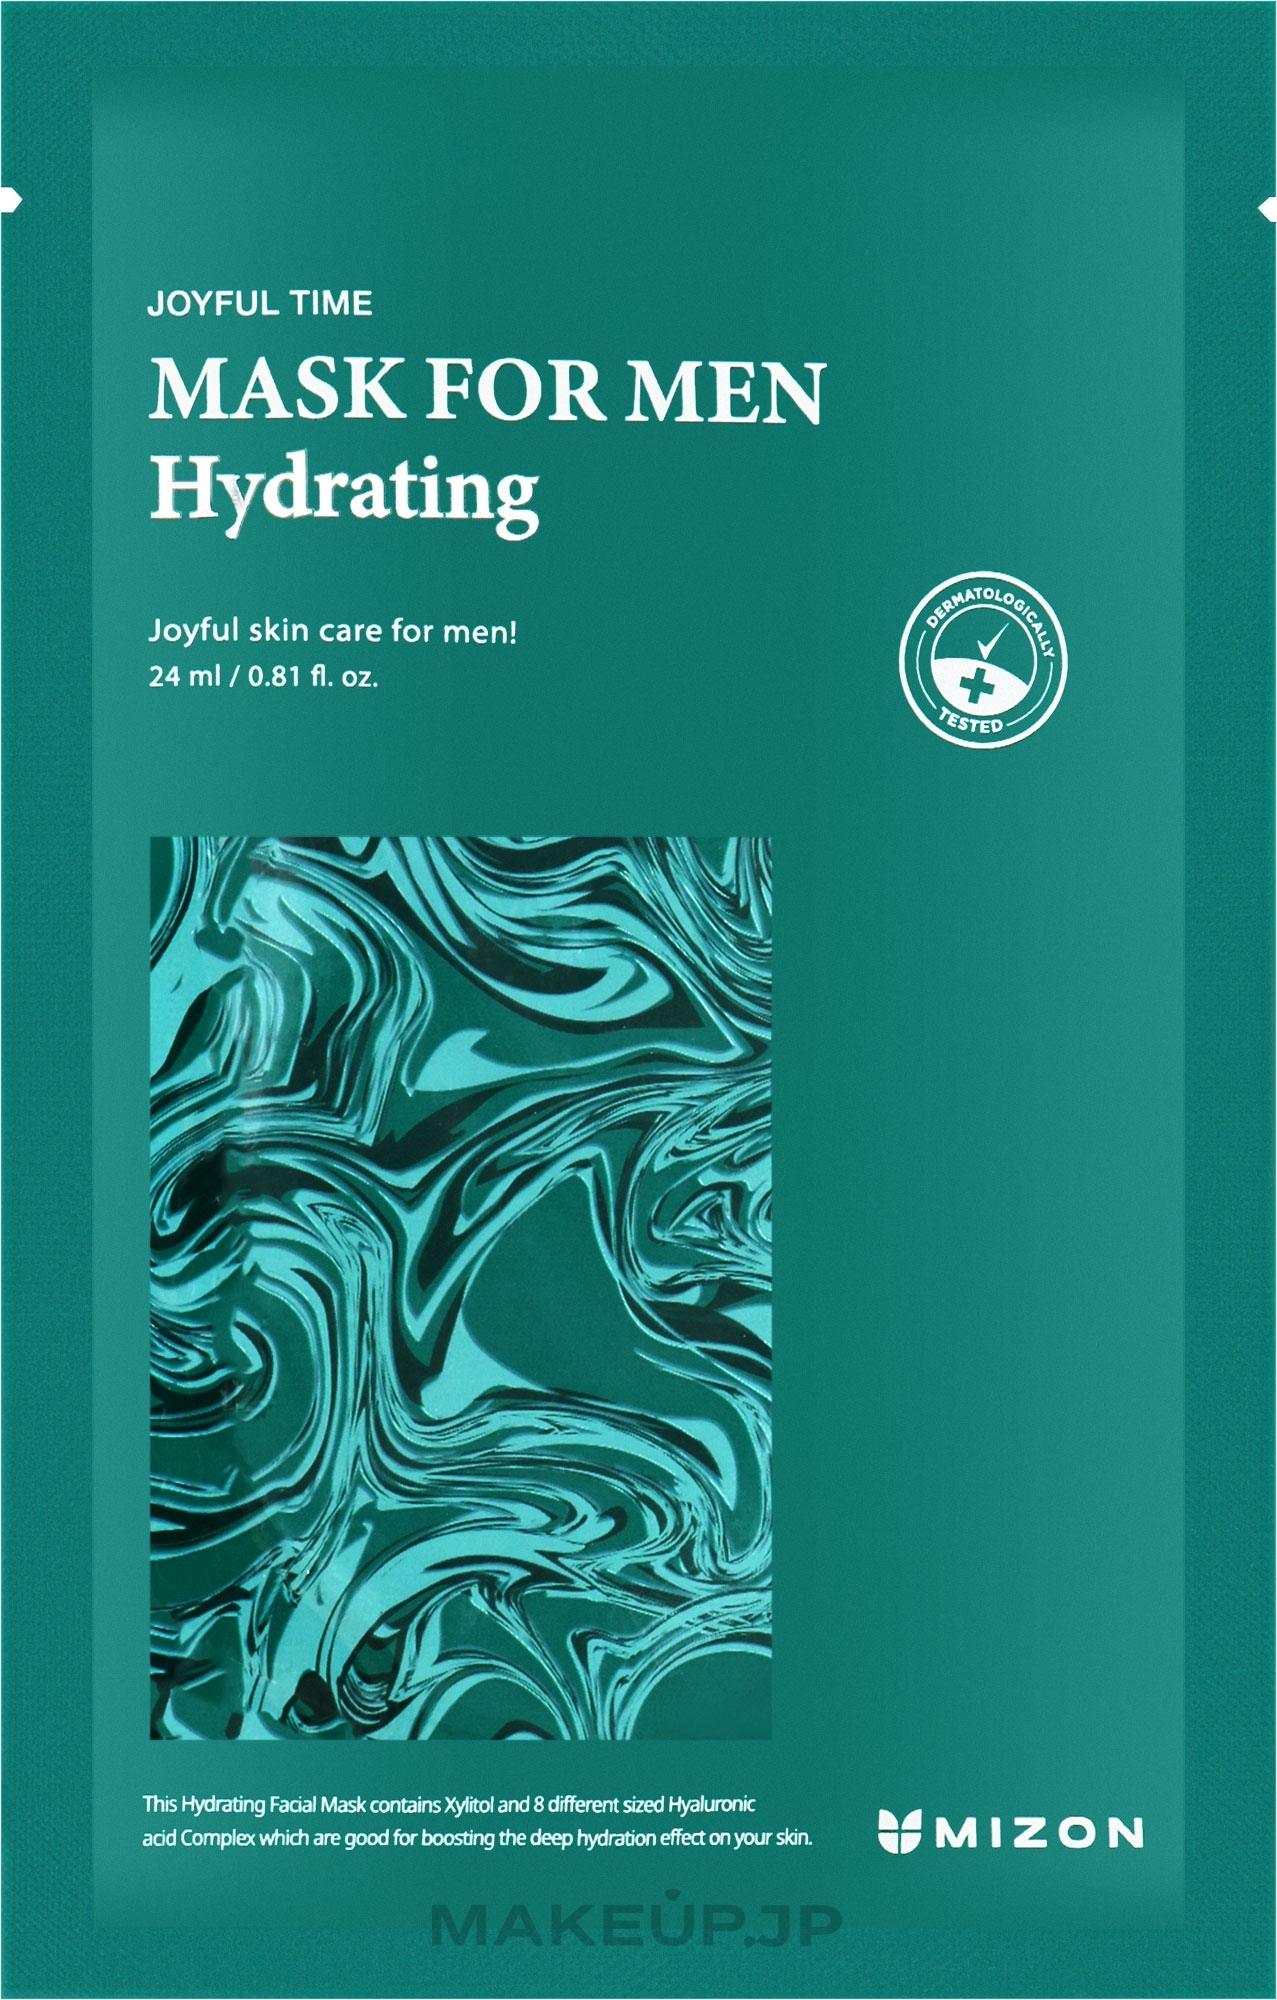 Moisturising Face Mask for Men - Mizon Joyful Time Mask For Men Hydrating — photo 24 ml